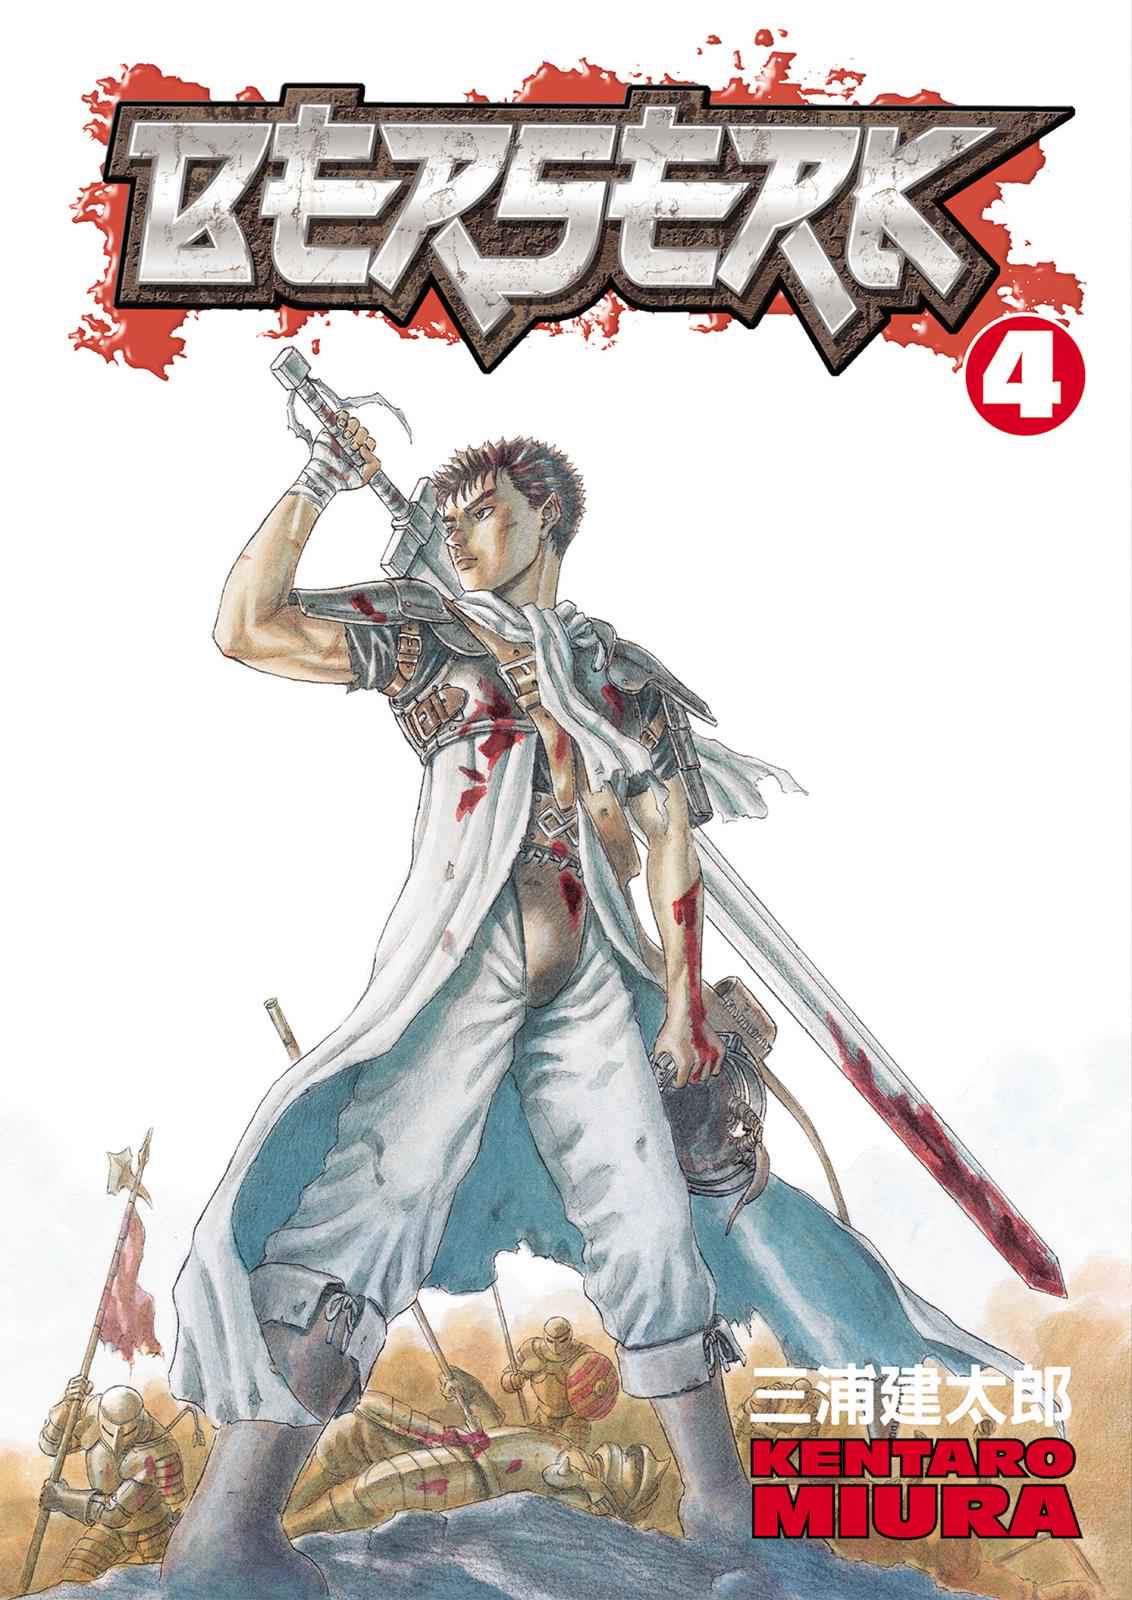 Read Berserk Manga Online